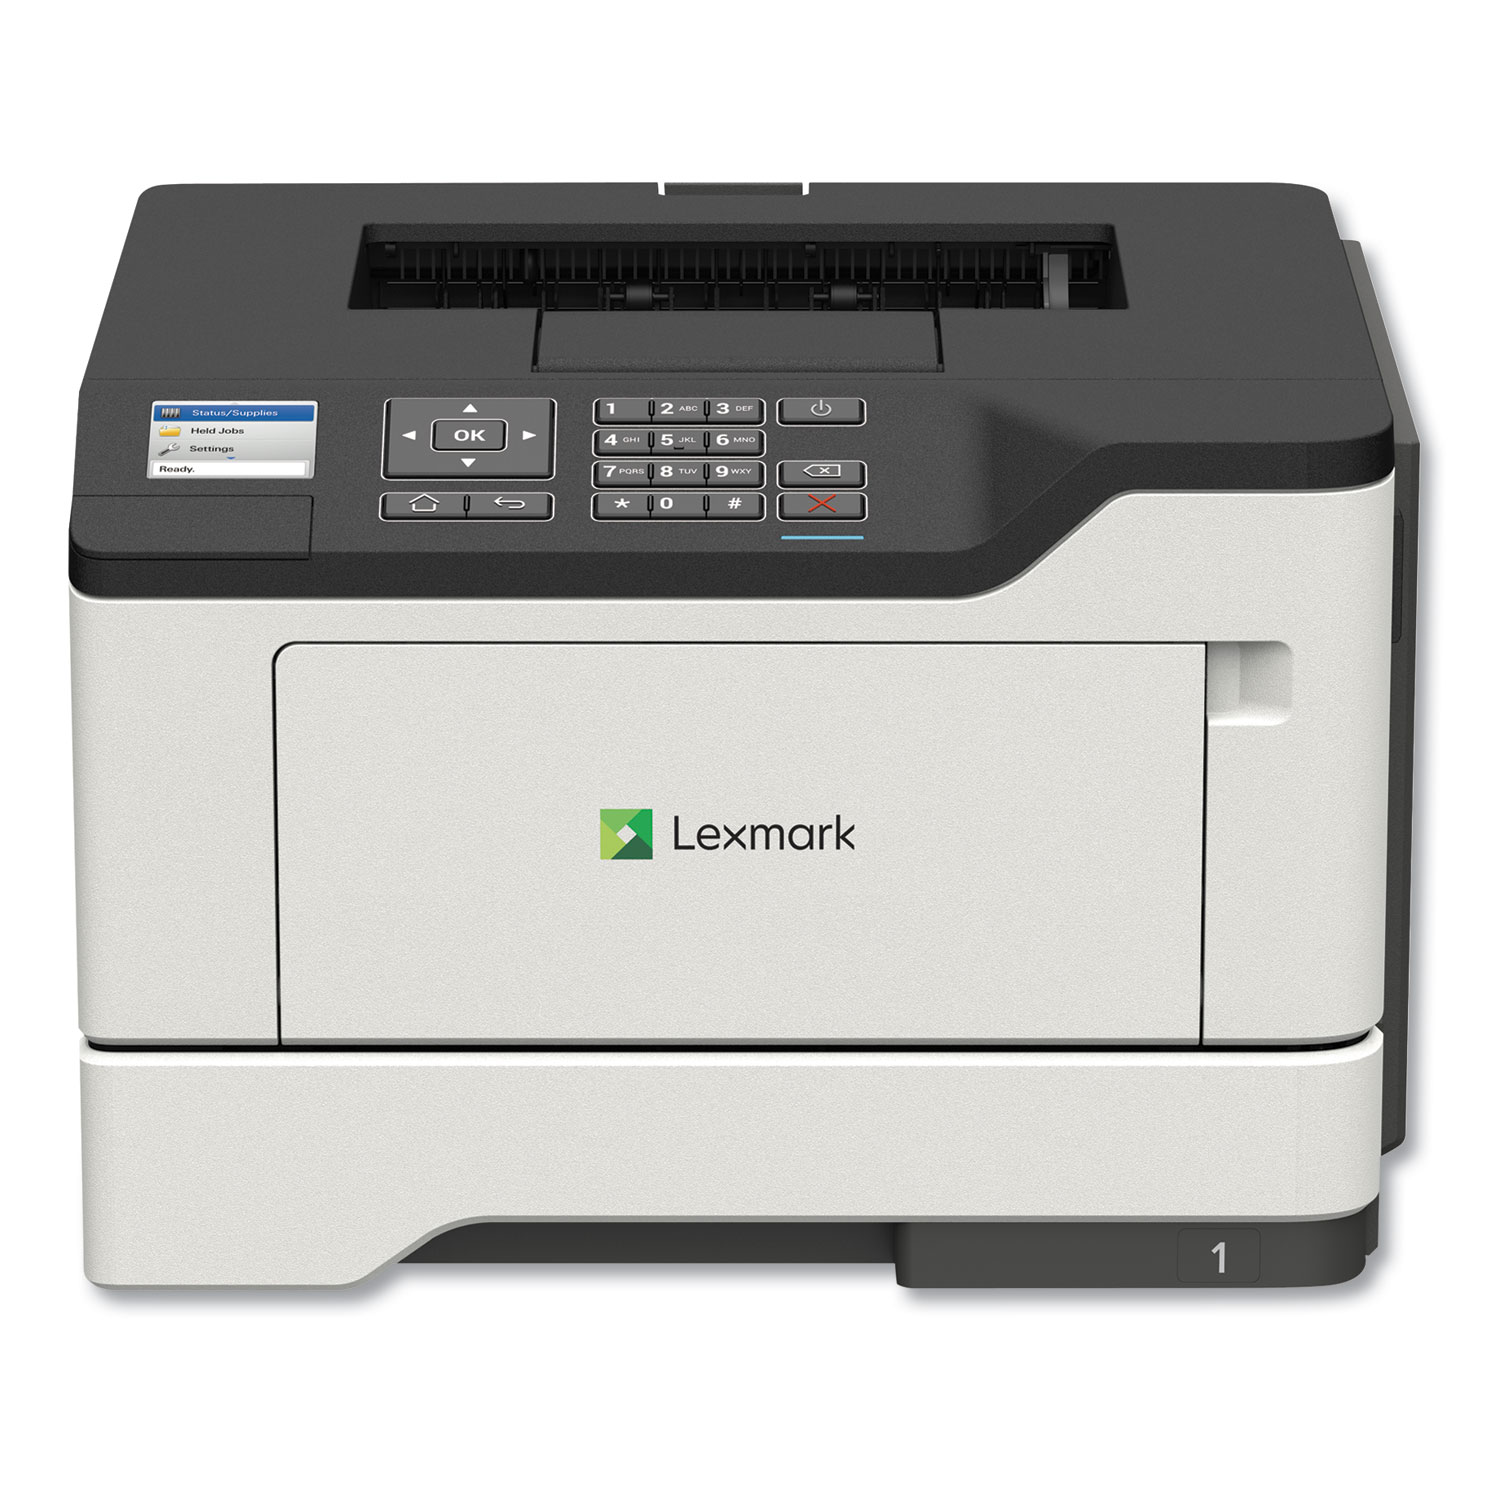  Lexmark 36S0300 MS521dn Wireless Laser Printer (LEX36S0300) 